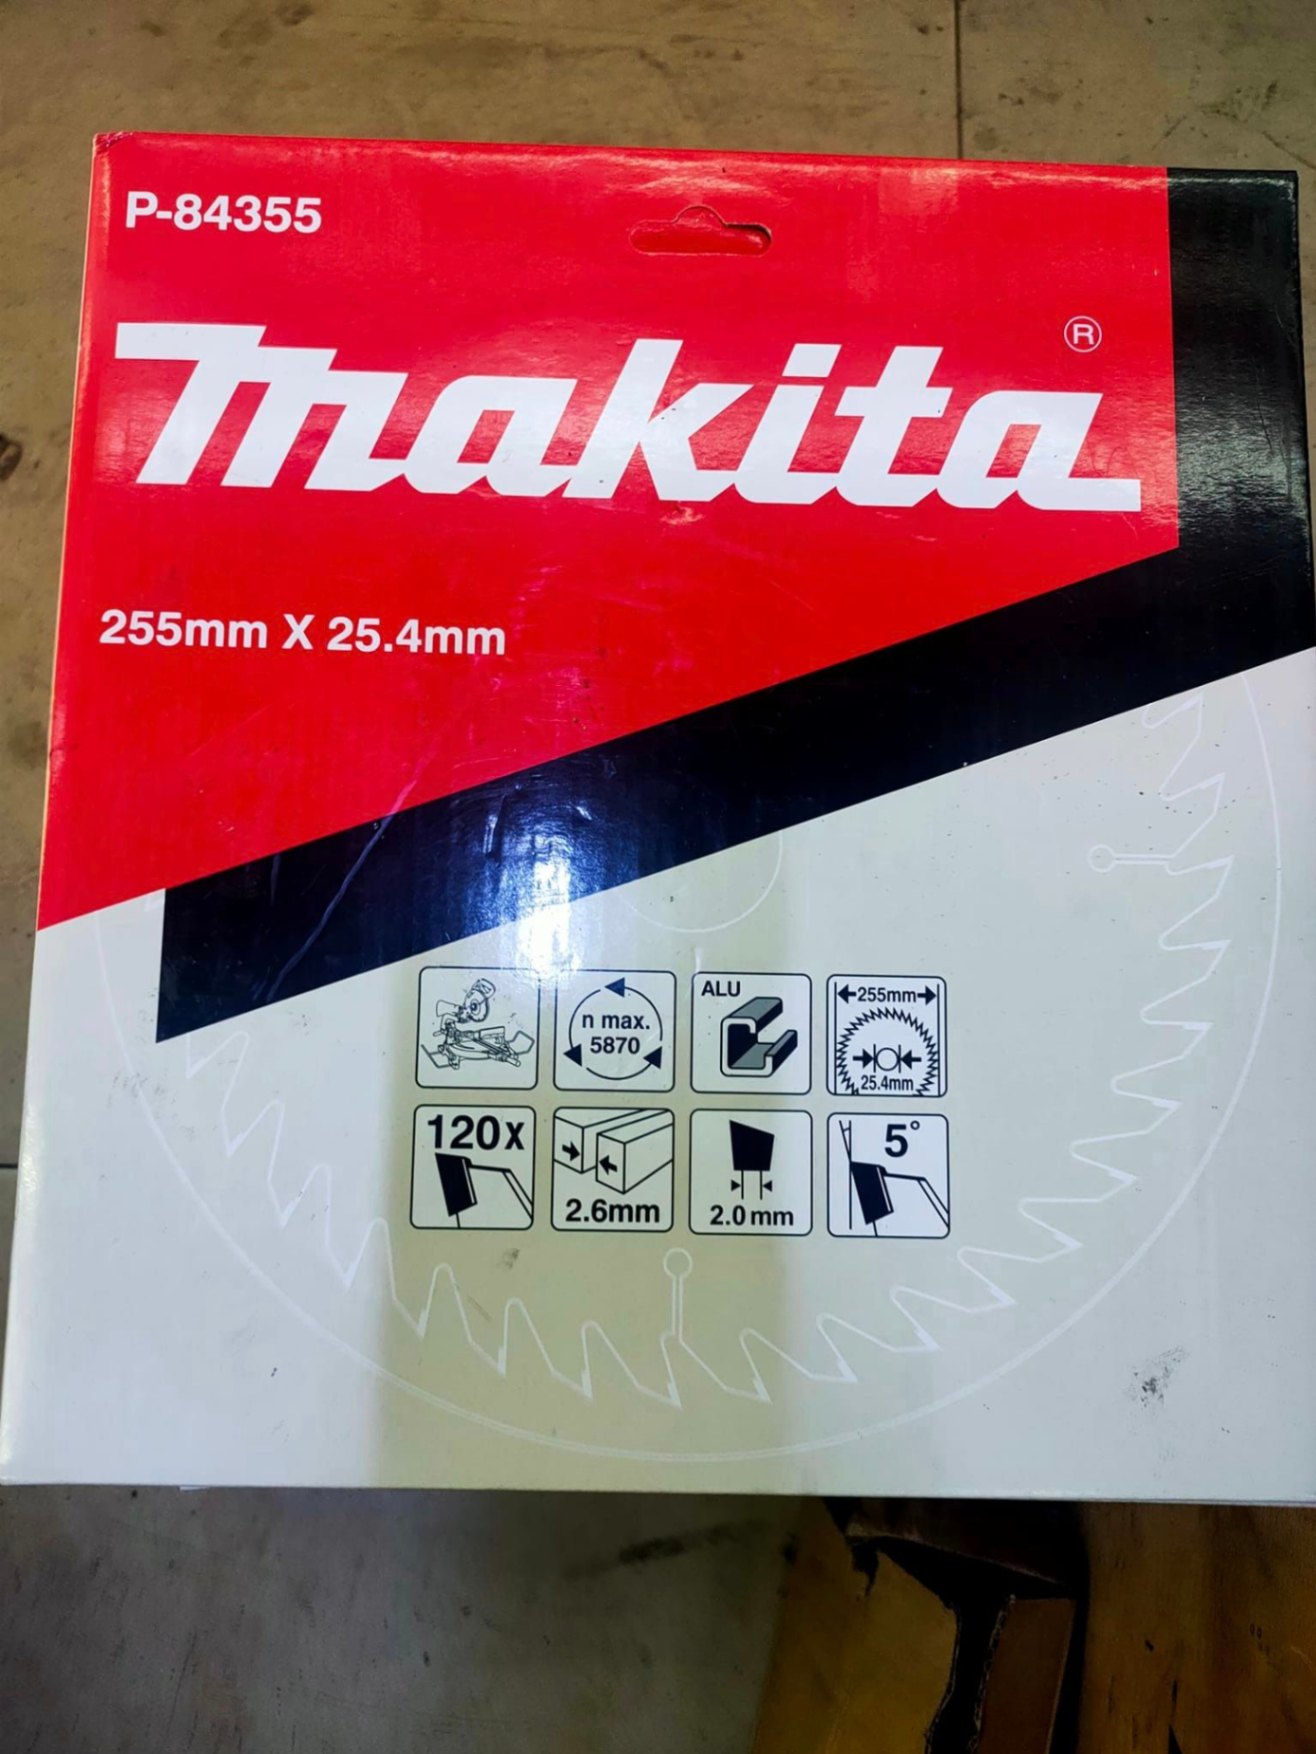 Tips sử dụng và bảo quản máy cắt nhôm Makita